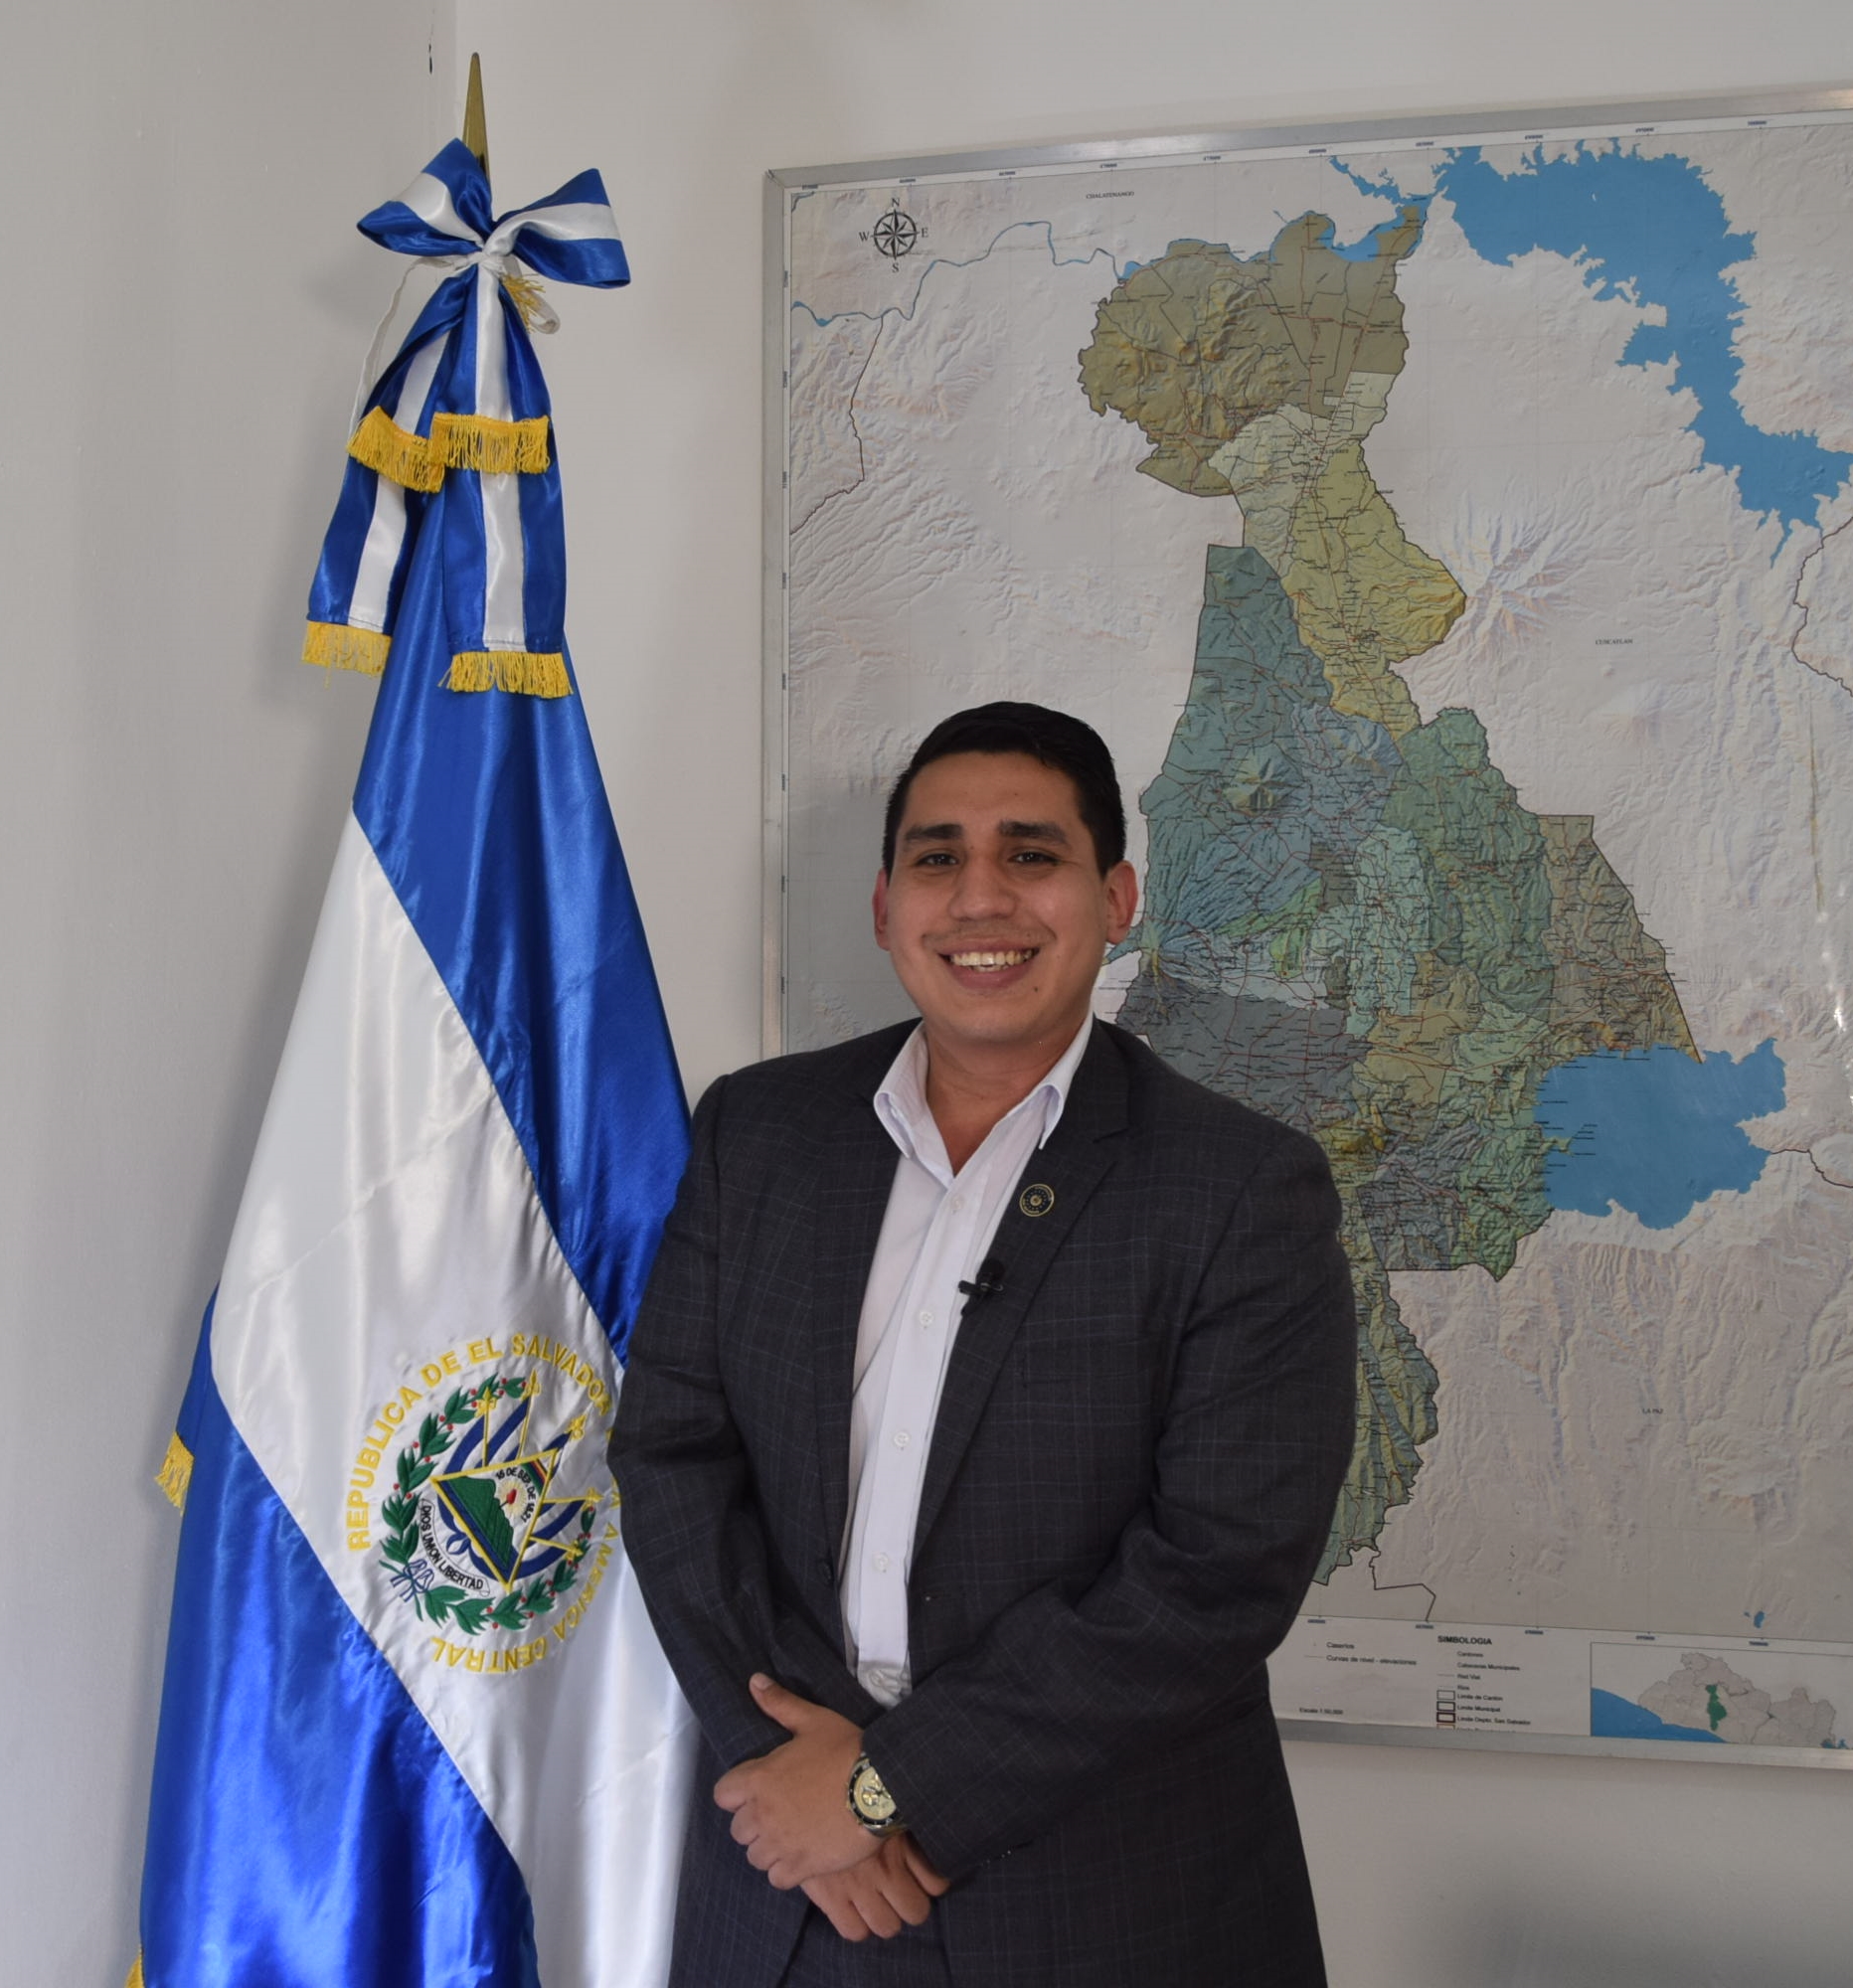 Gobernador de San Salvador:  Todas las instituciones estamos vinculadas en beneficio de los salvadoreños